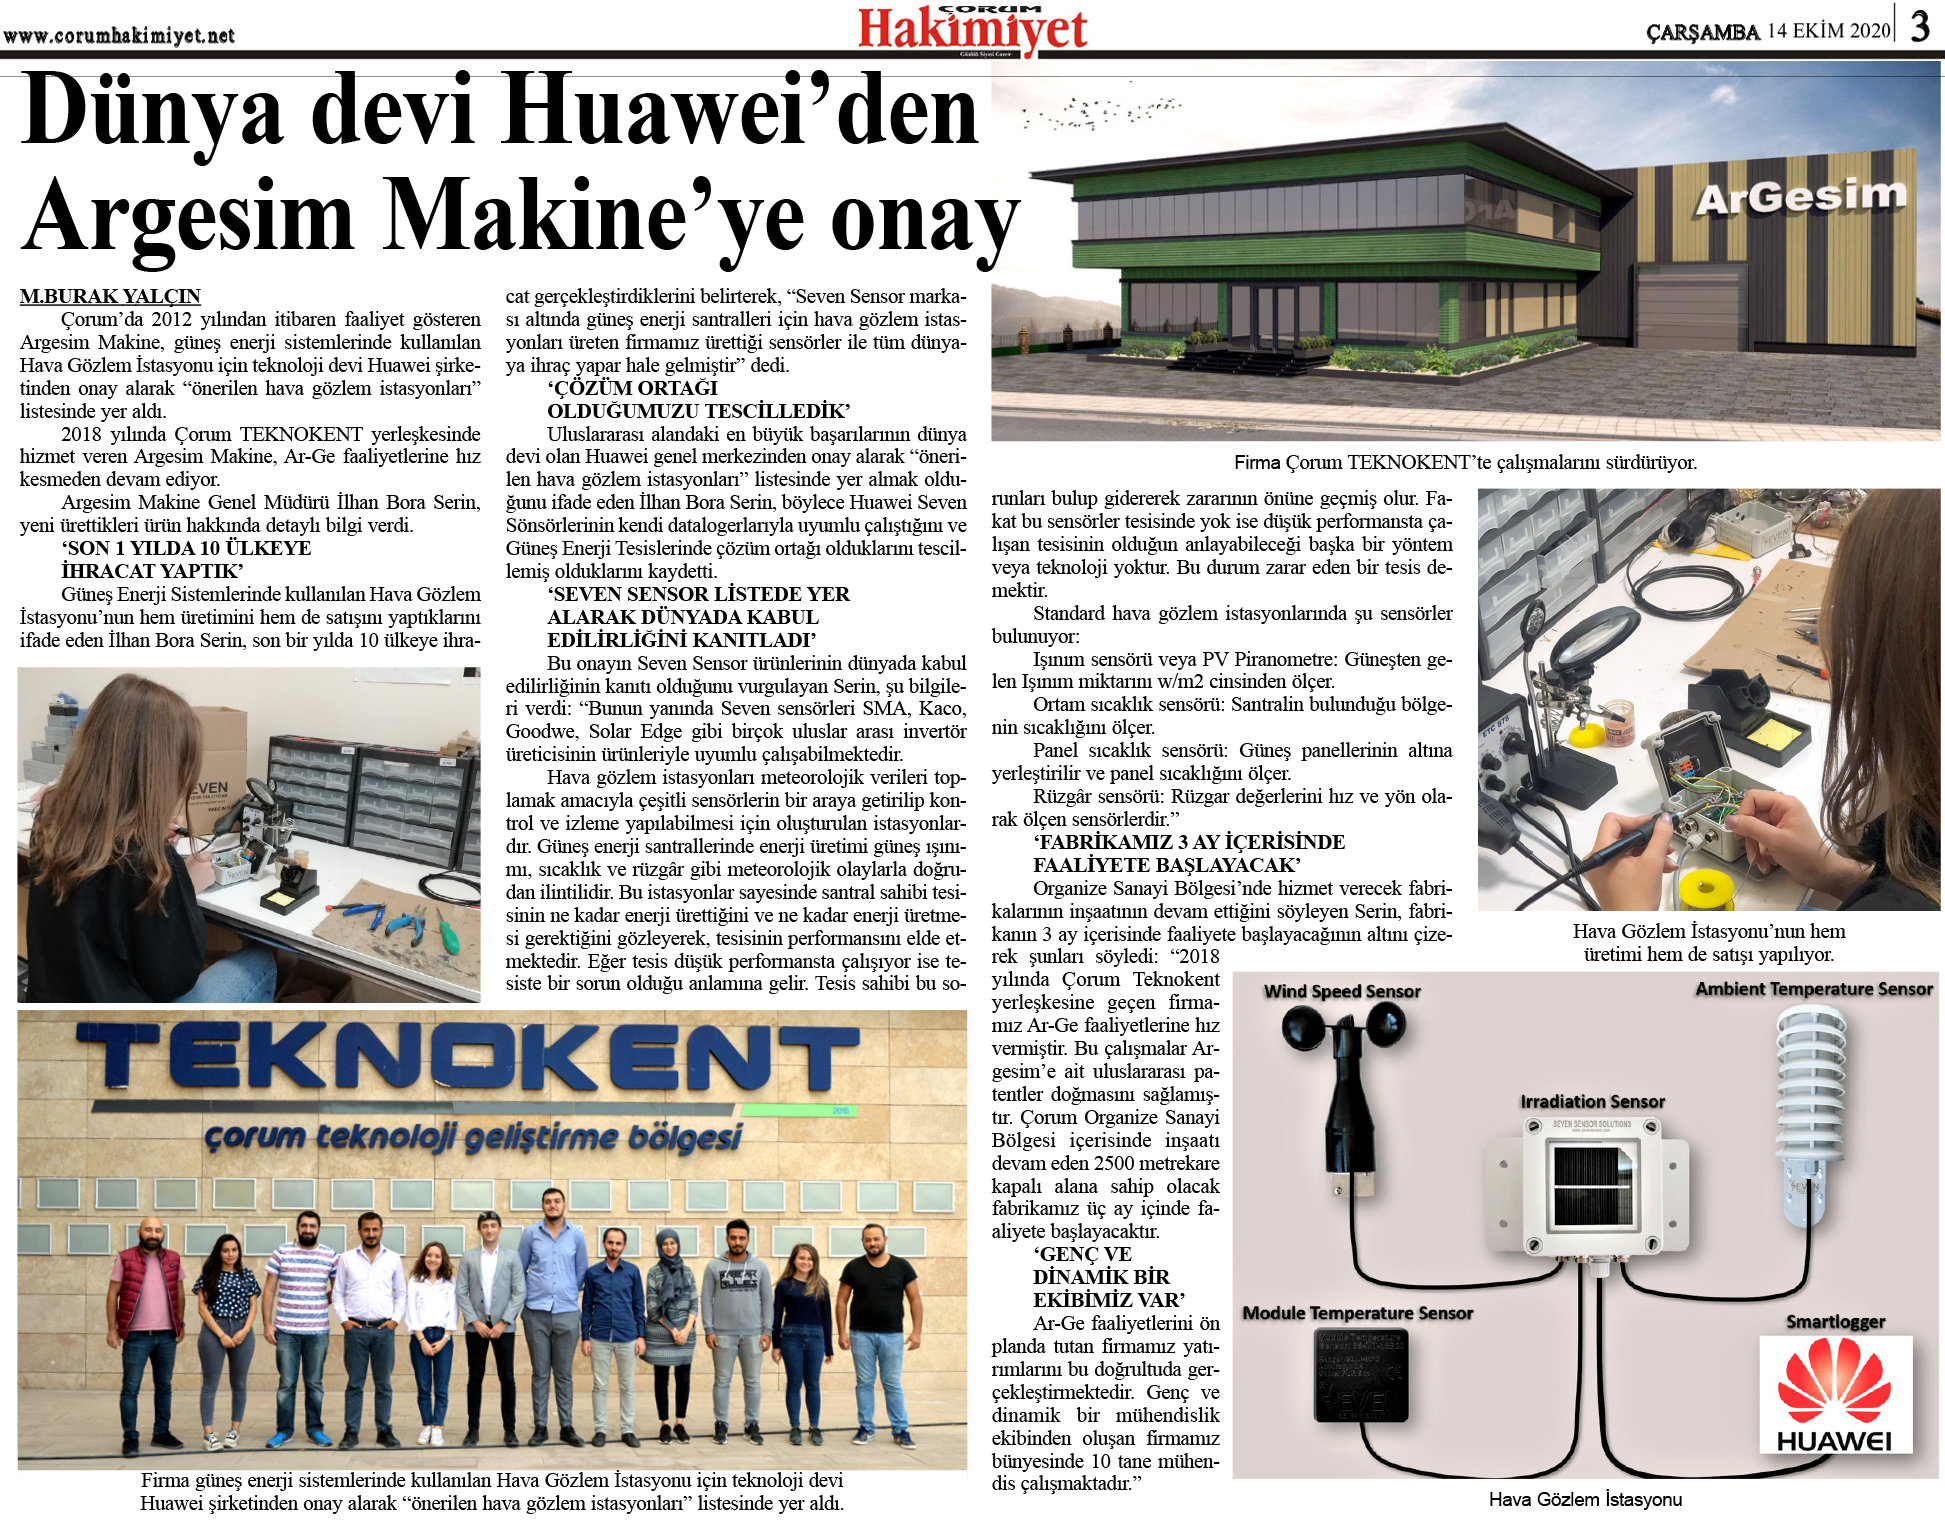  Huawei-Argesim-Makina-Onay